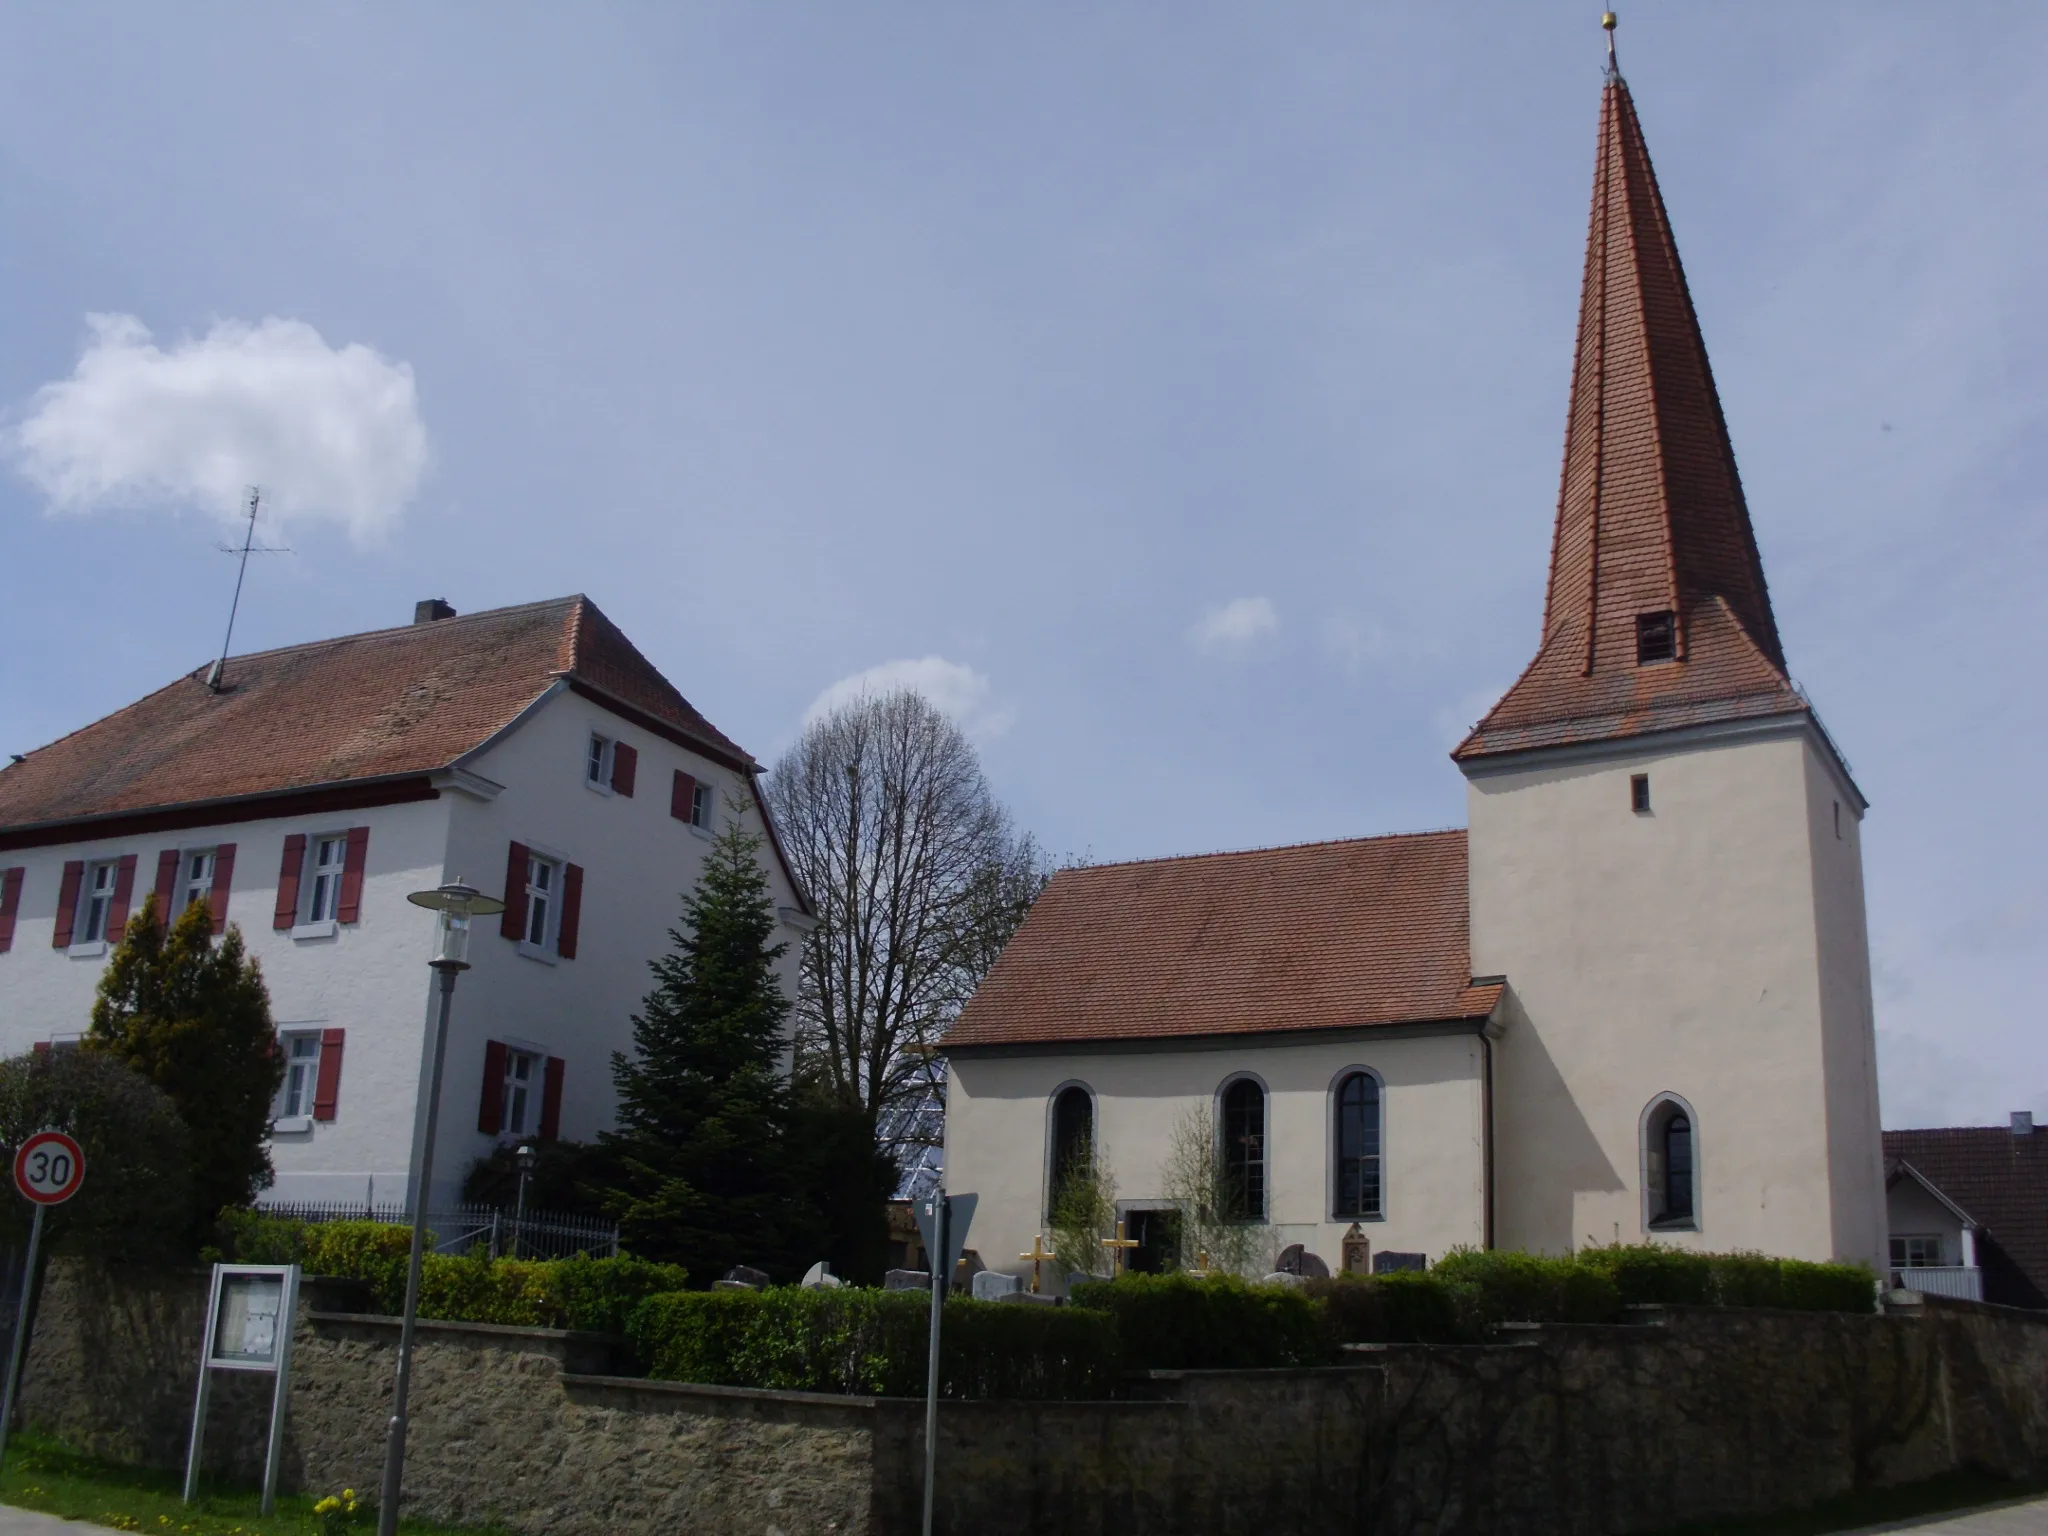 Photo showing: Pflaumfeld, Gemeindeteil von Gunzenhausen im mittelfränkischen Landkreis Weißenburg-Gunzenhauen (Bayern), Kirche